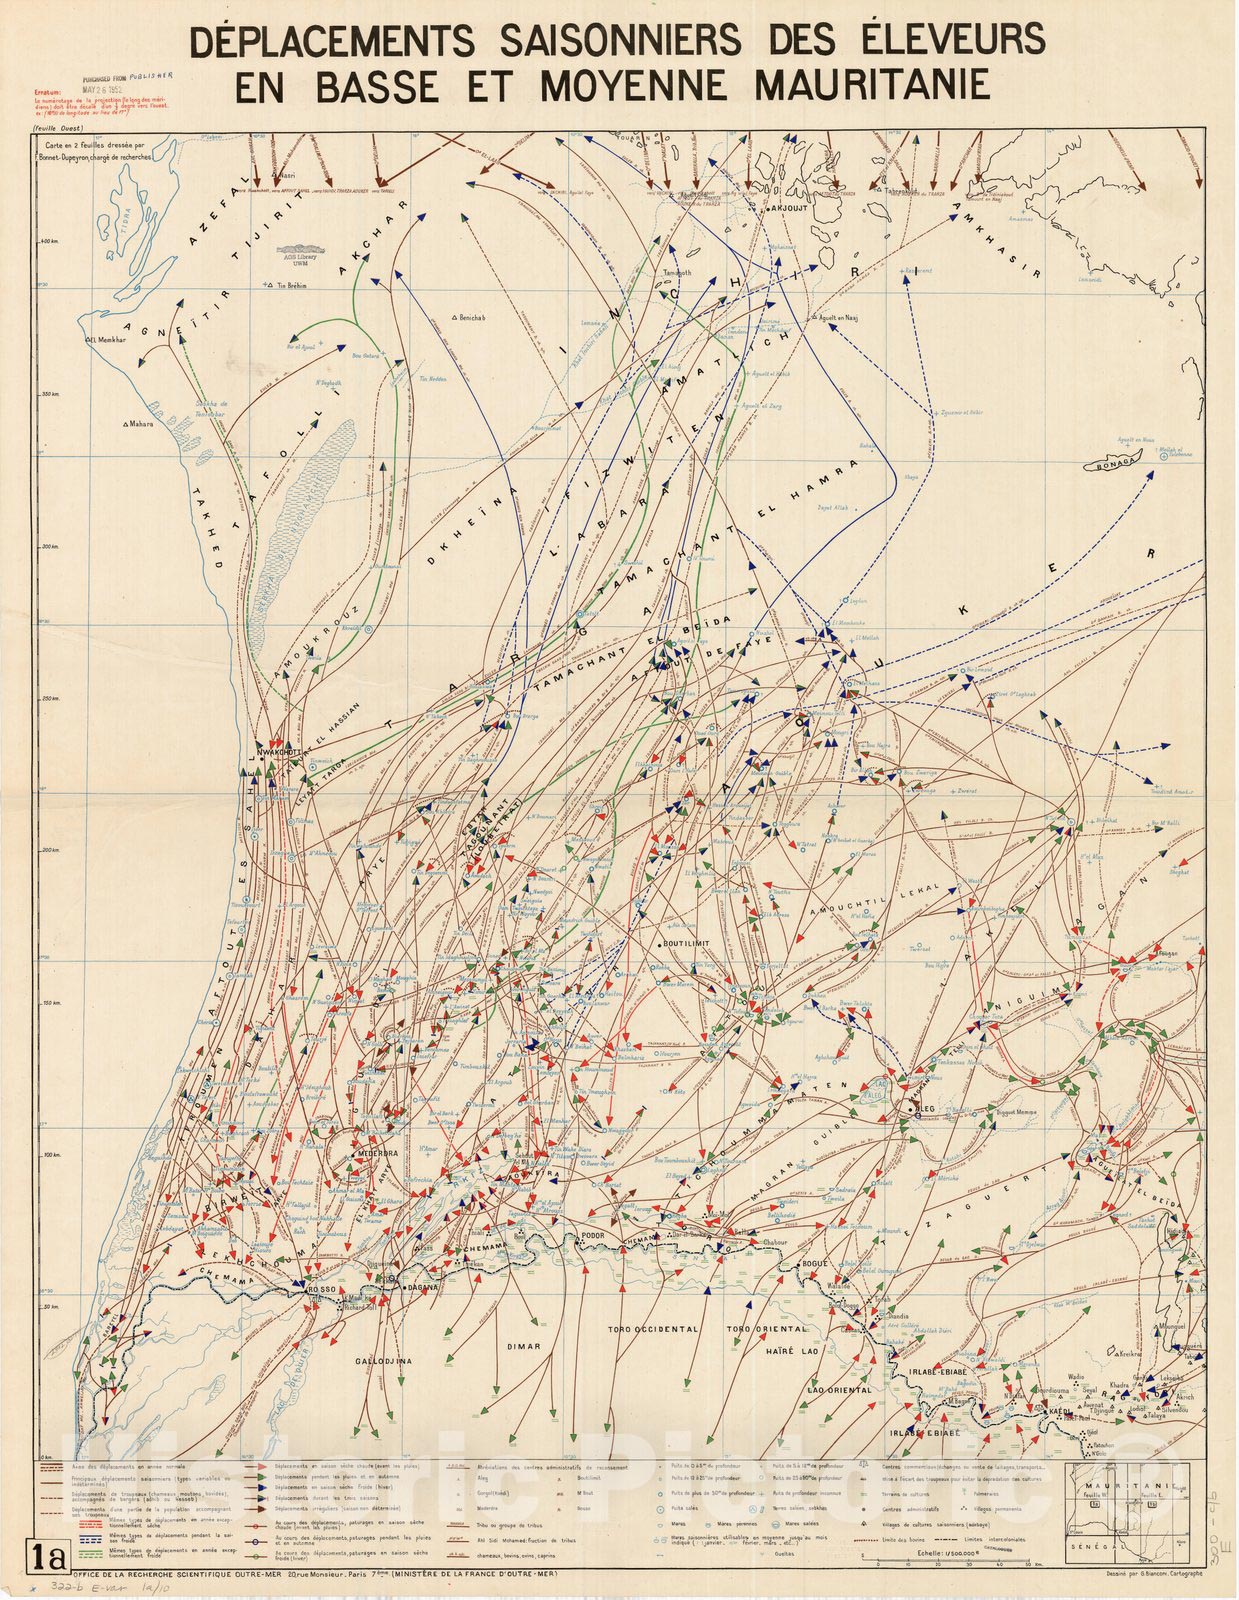 Map : Mauritania 1951, Deplacements saisonniers des eleveurs en basse et moyenne Mauritanie, Antique Vintage Reproduction